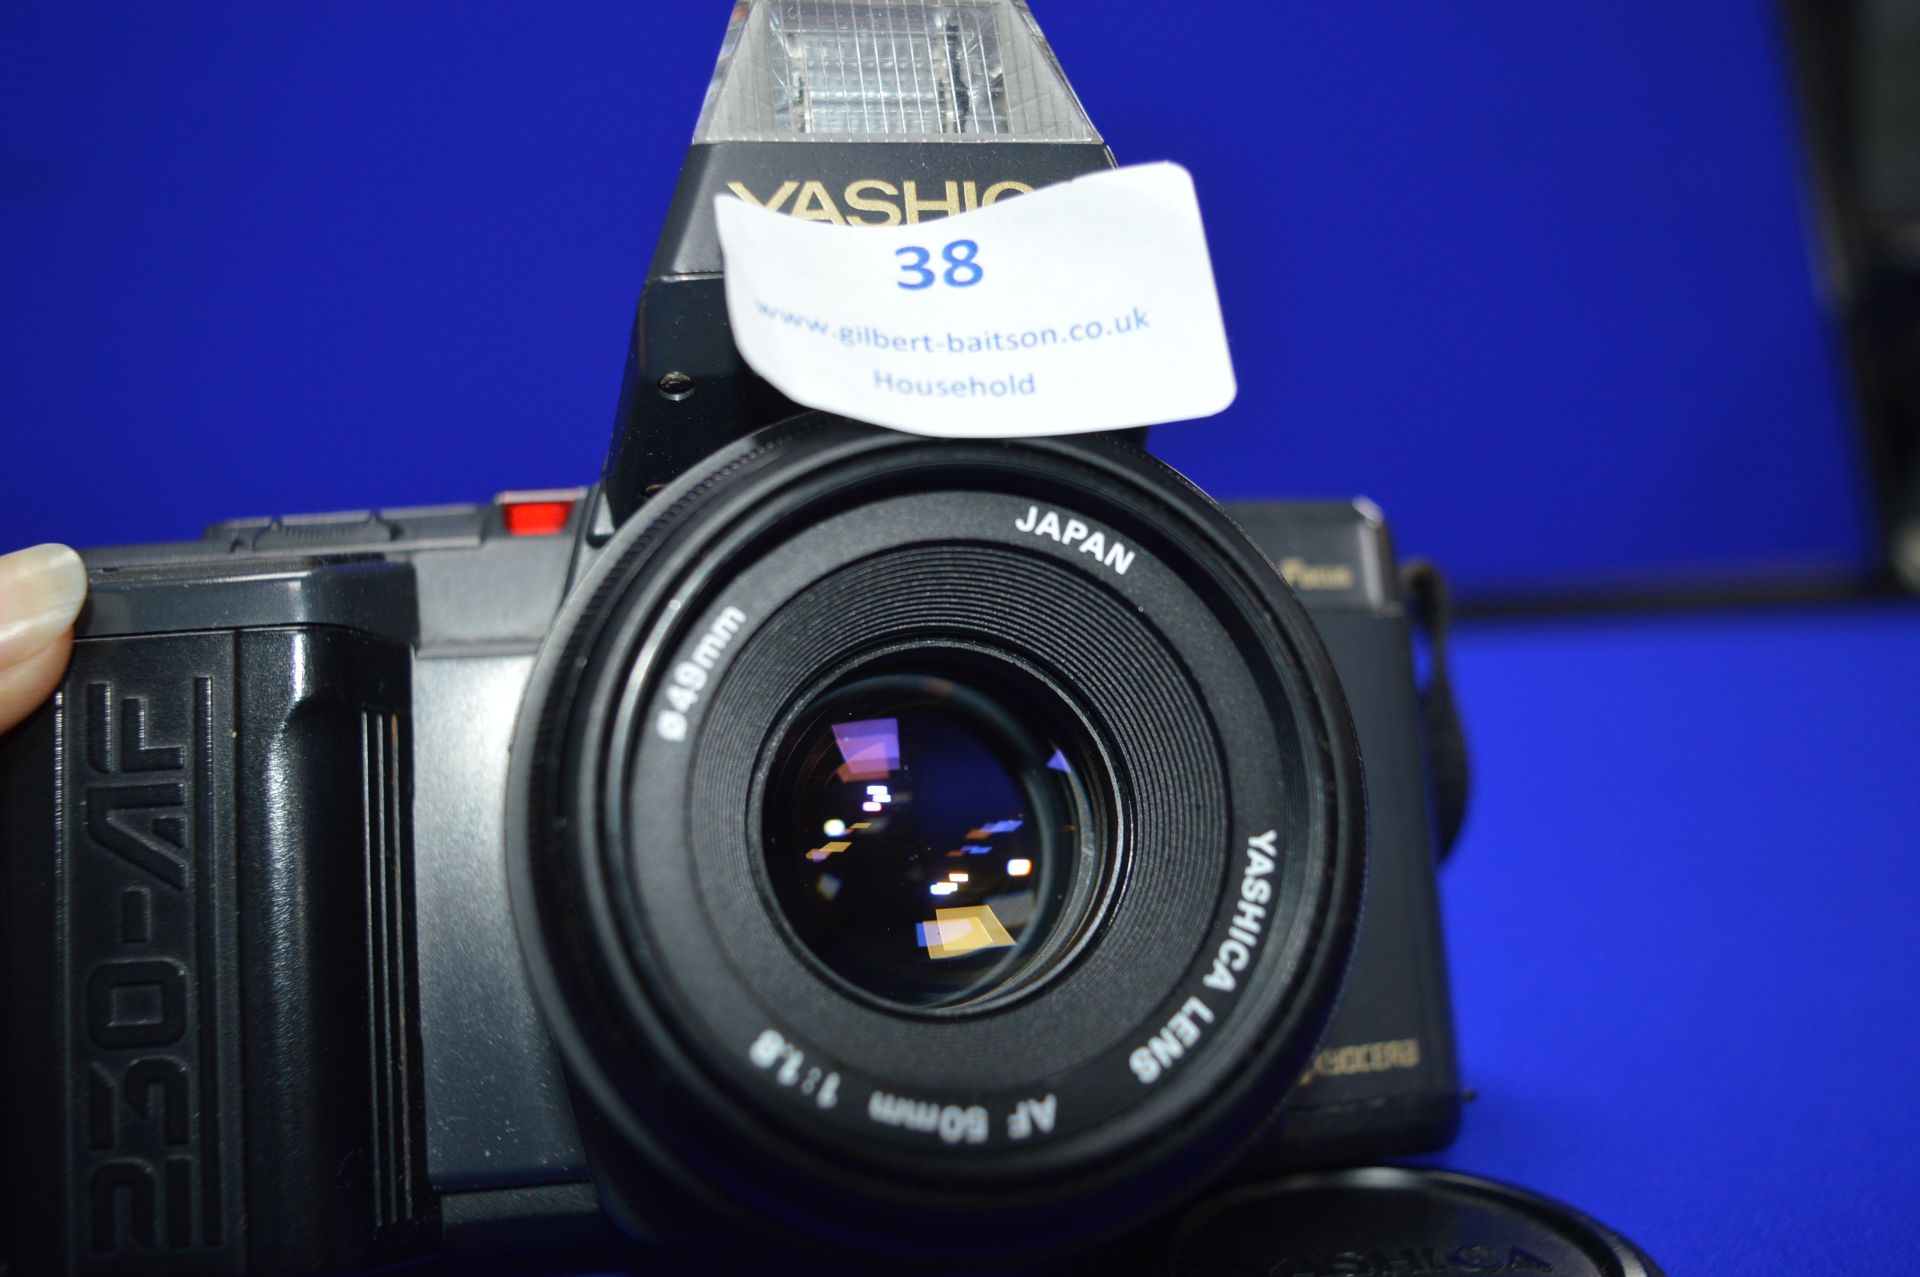 Yashica 230-AF SLR Camera with Yashica AF 50mm 1:1.8 Lens - Image 2 of 2